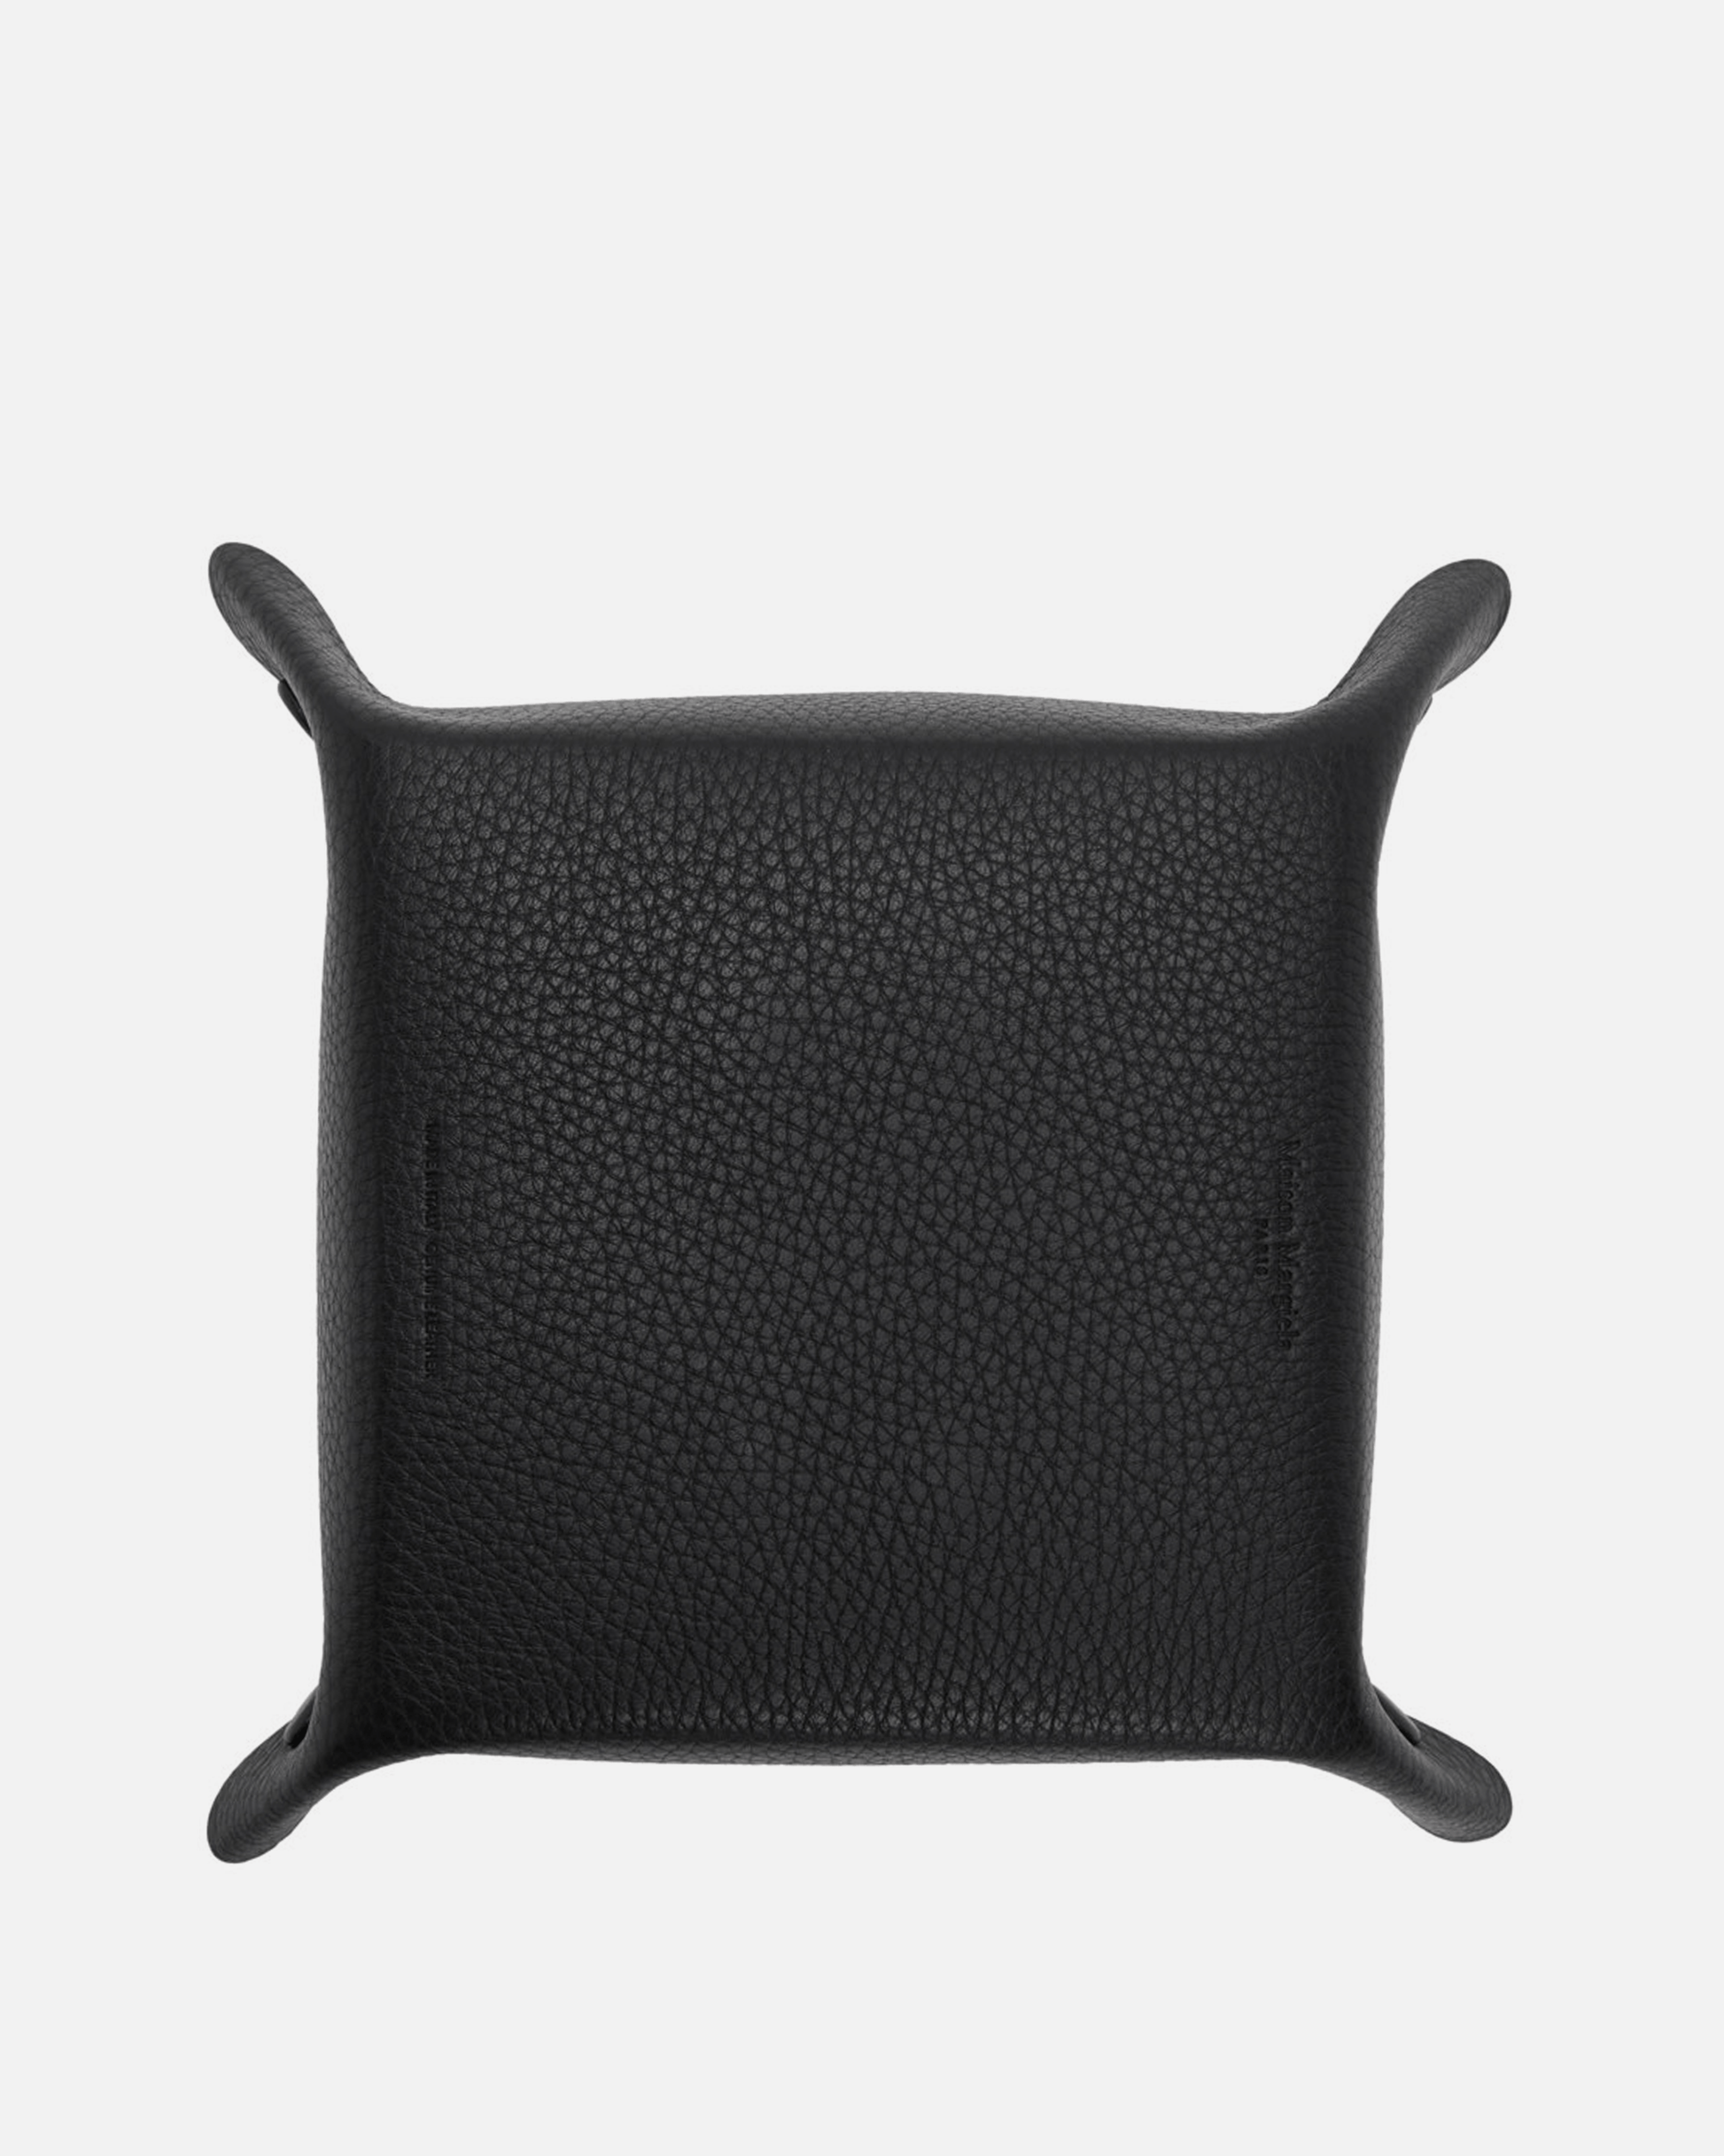 Maison Margiela Leather Goods Leather Key Tray in Black